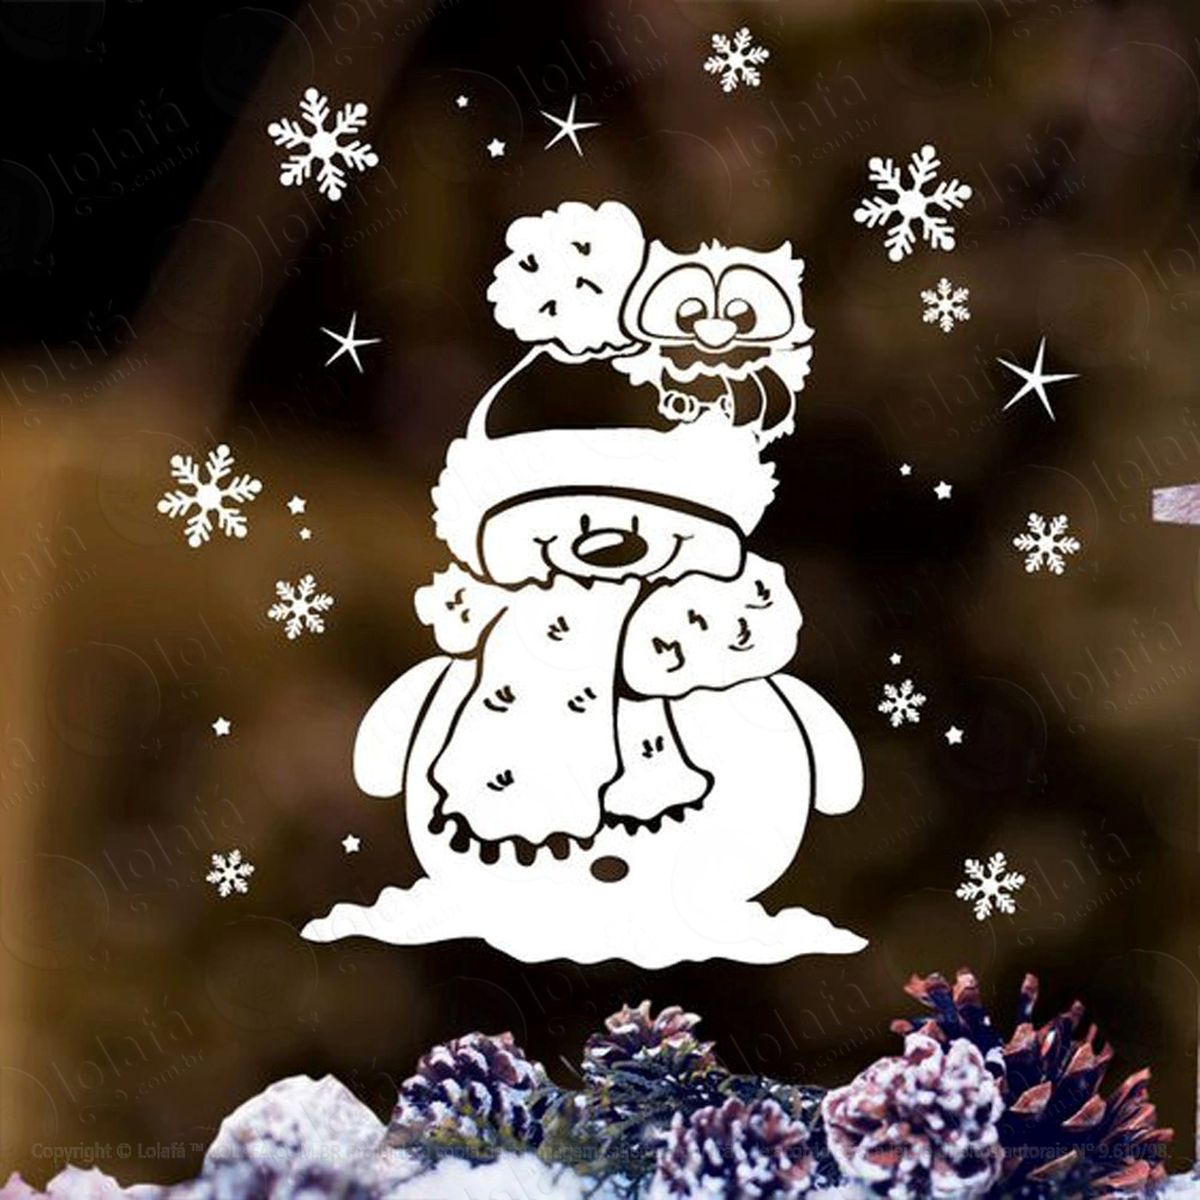 boneco de neve floquinho adesivo de natal para vitrine, parede, porta de vidro - decoração natalina mod:273